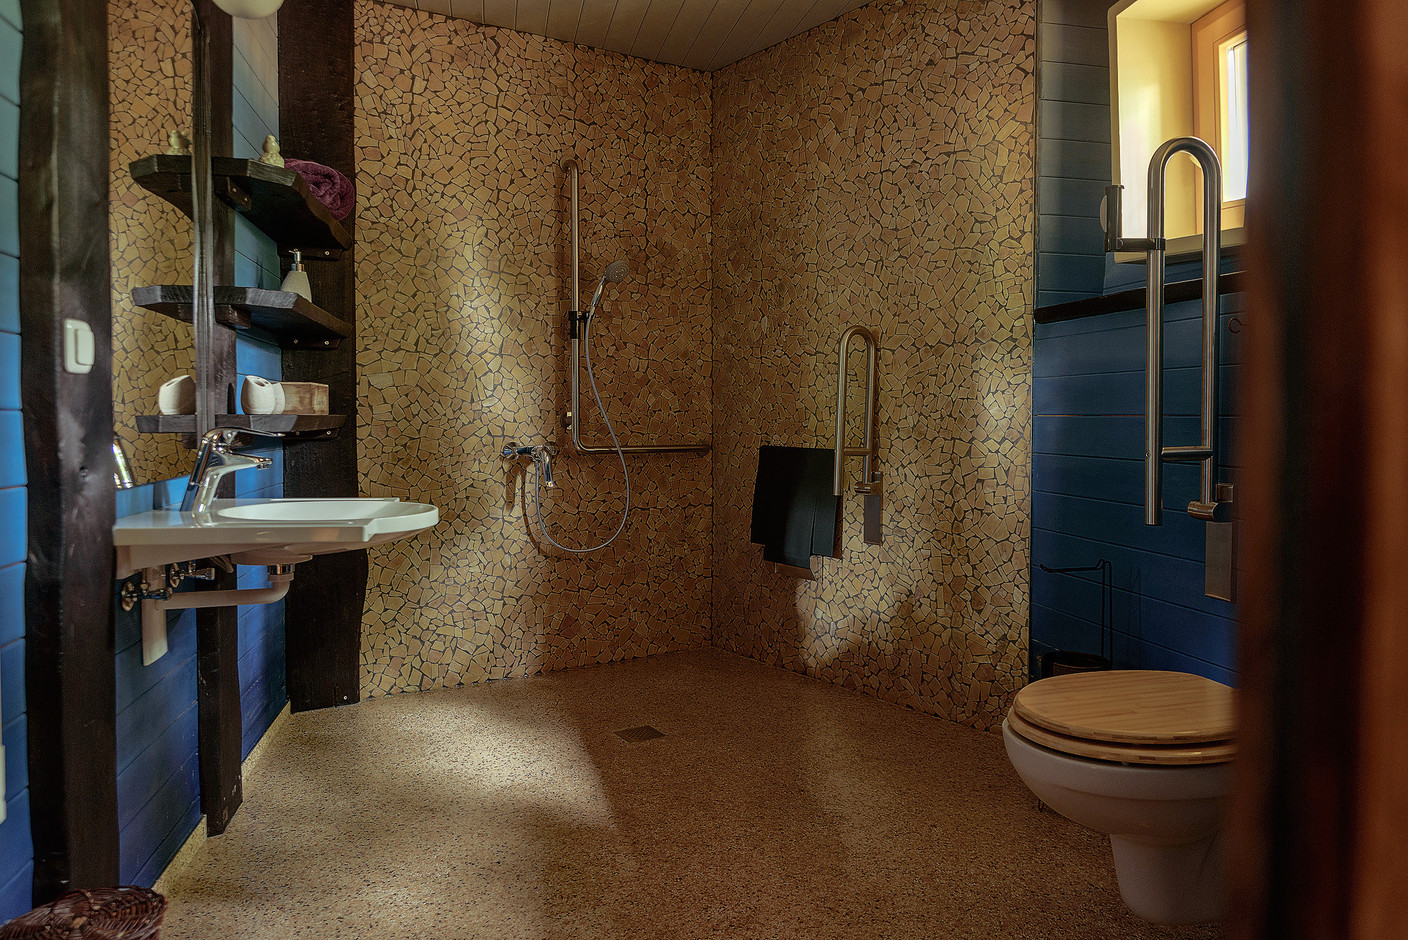 Une nuit d’aventure, mais pas trop non plus. Les cabanes restent très confortables avec des salles de bain spacieuses. (Photo: Escher bamhaiser)